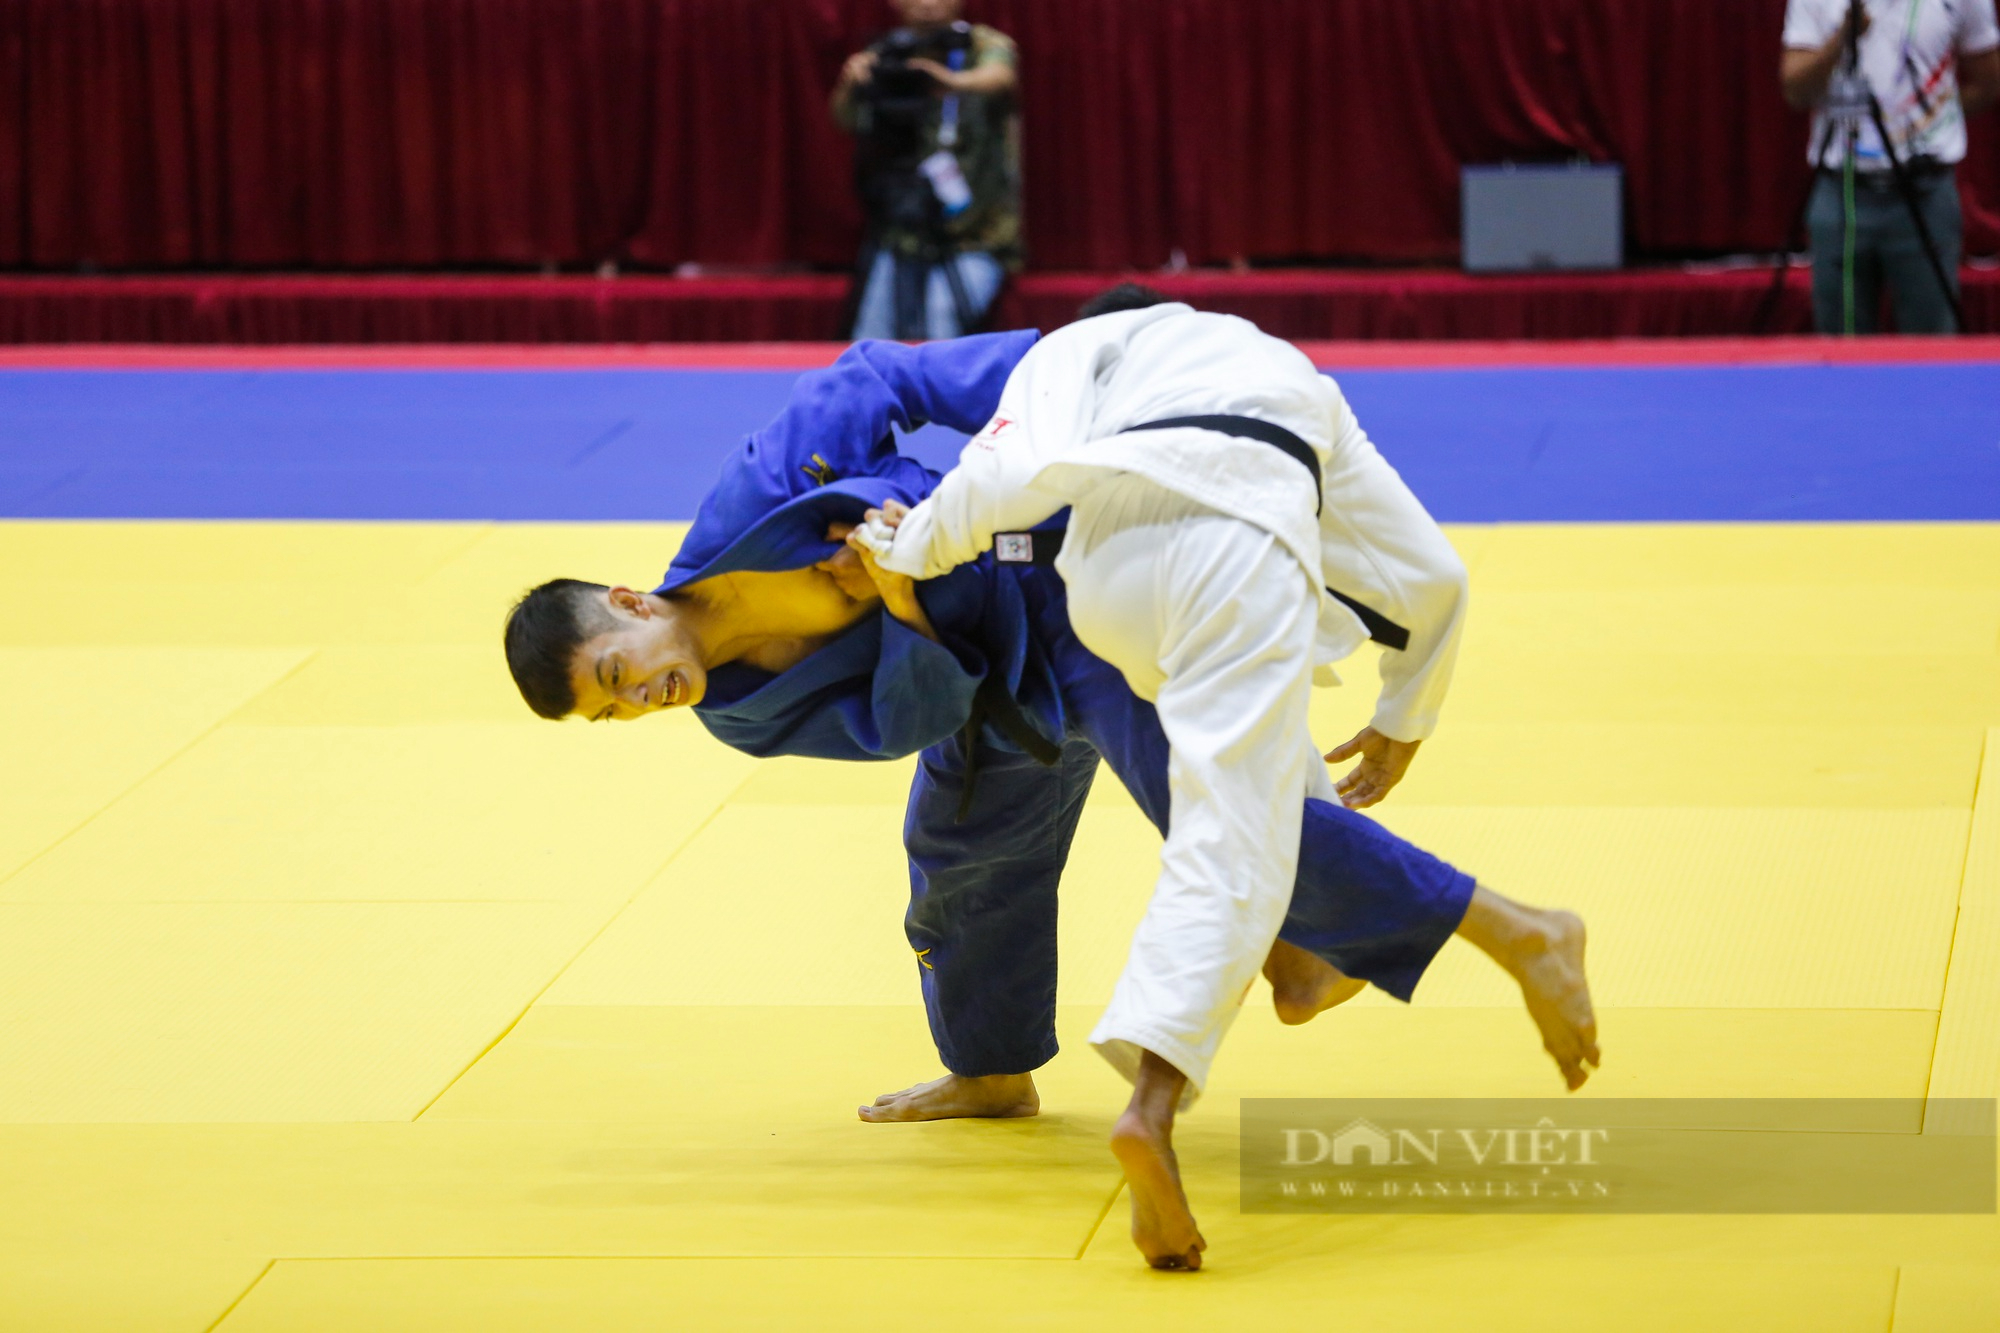 Võ sĩ Judo Việt Nam khóa chặt đối thủ và giành chiến thắng bằng luật bàn thắng vàng - Ảnh 2.